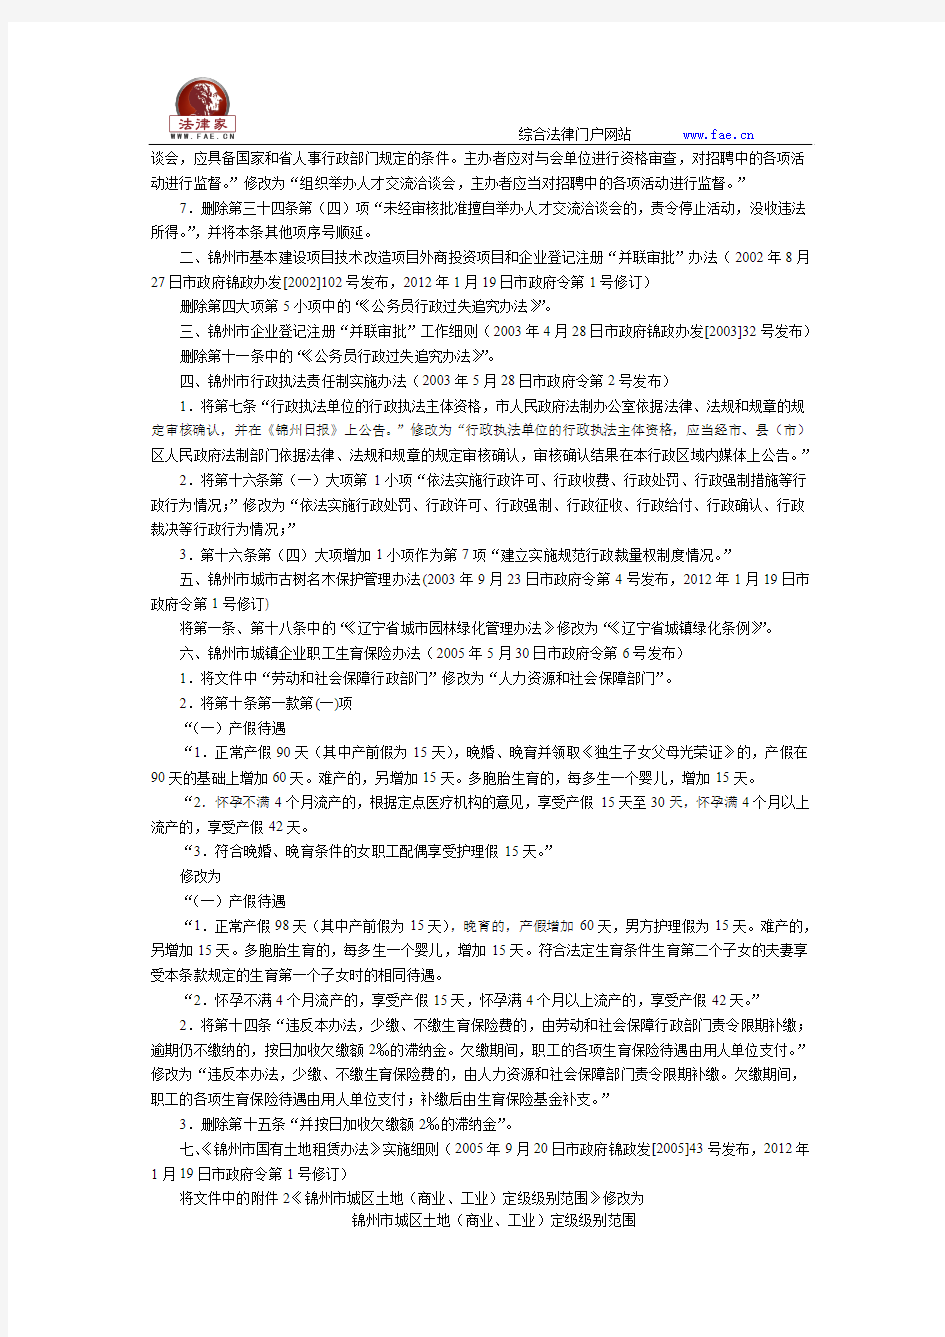 锦州市人民政府关于修改、废止、宣布失效、宣布继续有效规范性文件的决定-地方政府规章